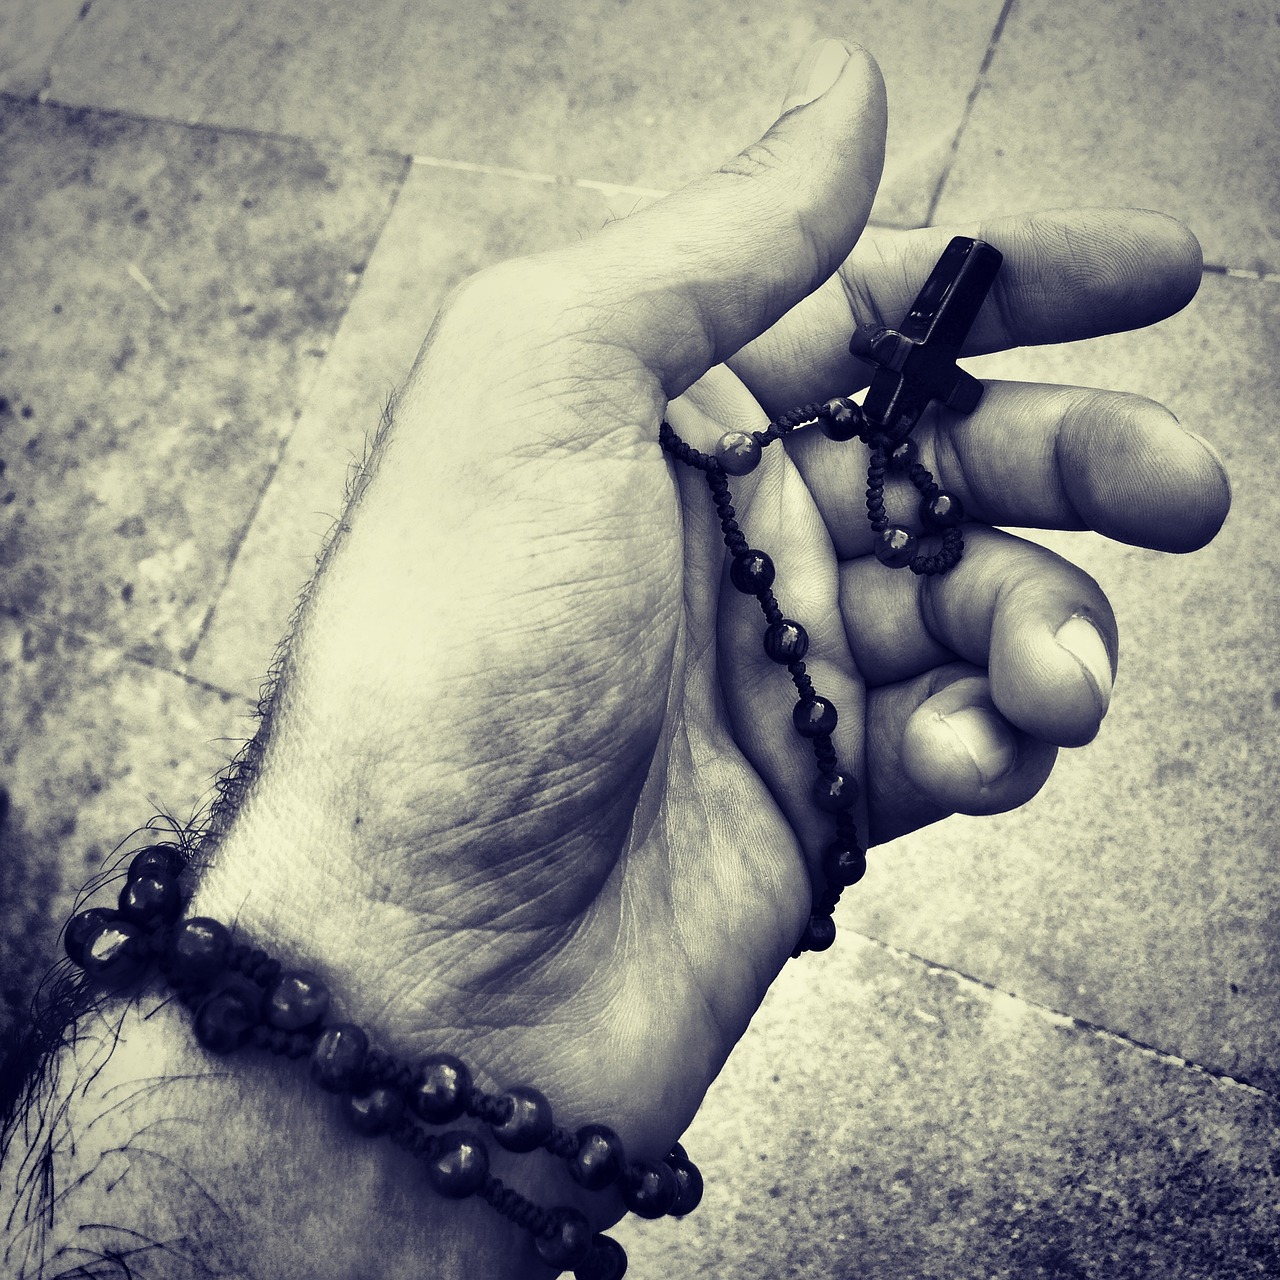 rosary praying hand black and white free photo